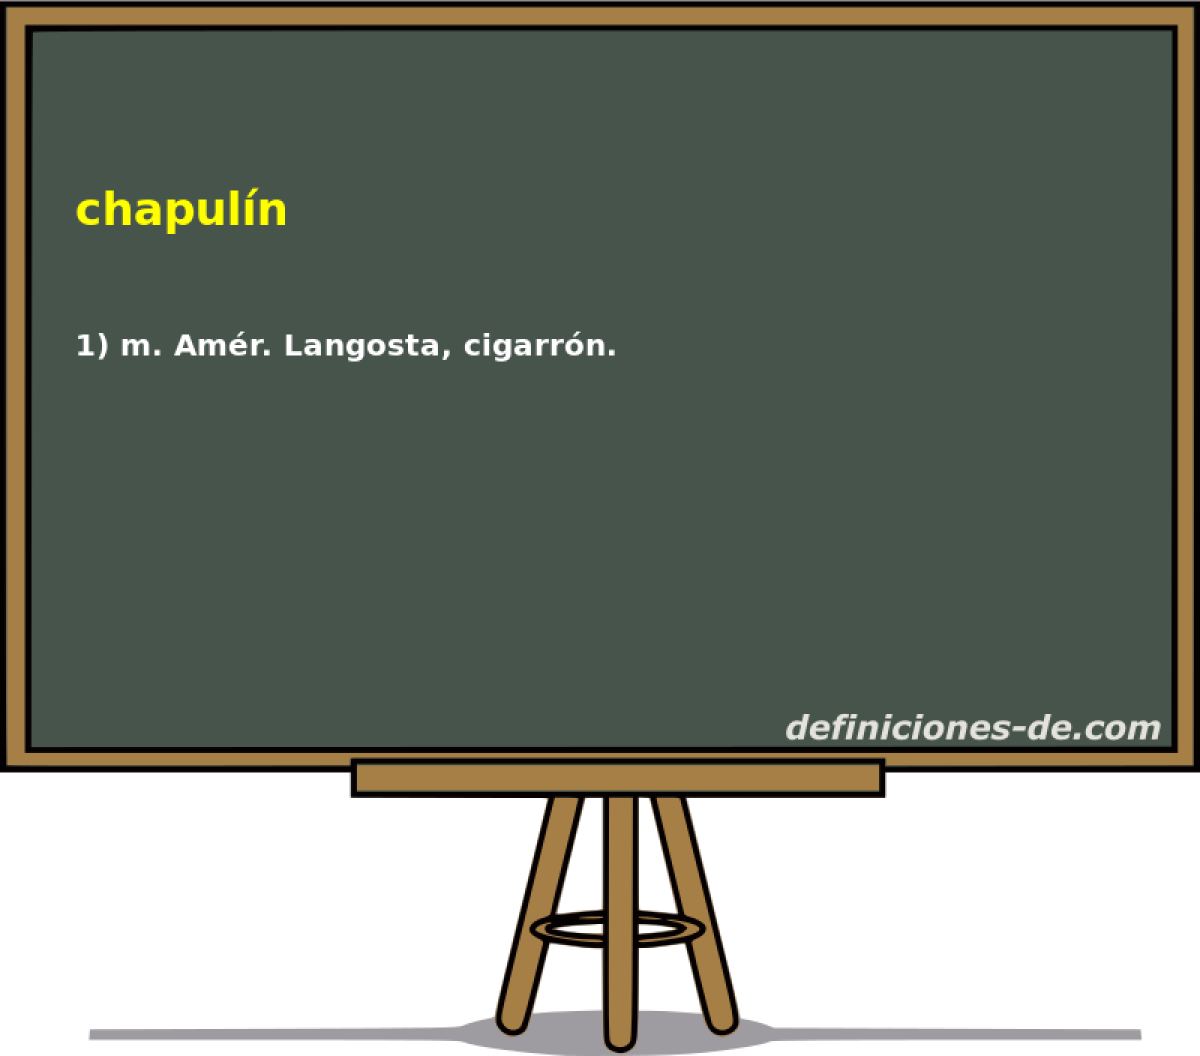 chapuln 